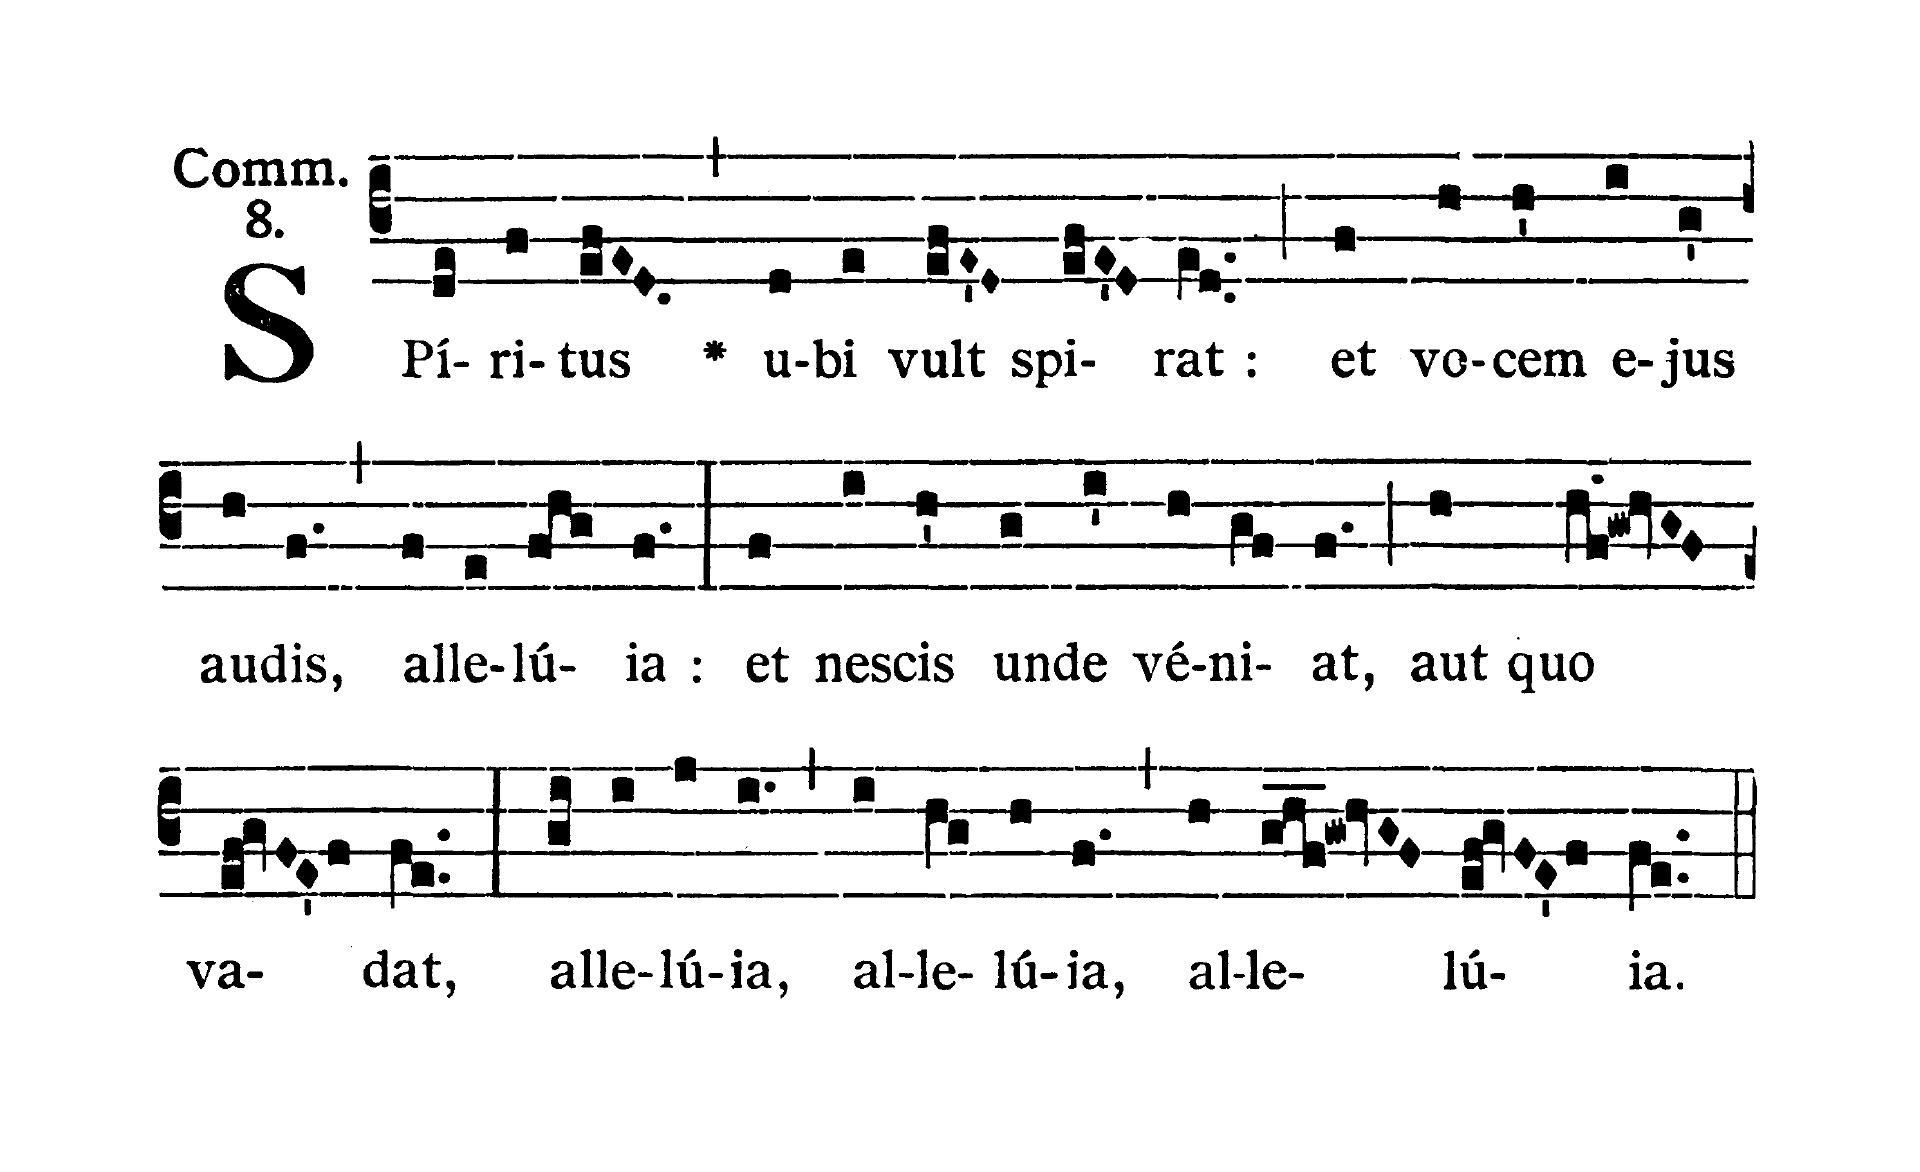 Sabbato infra Octavam Pentecostes (Ember Saturday of Pentecost) - Communio (Spiritus ubi vult spirat)